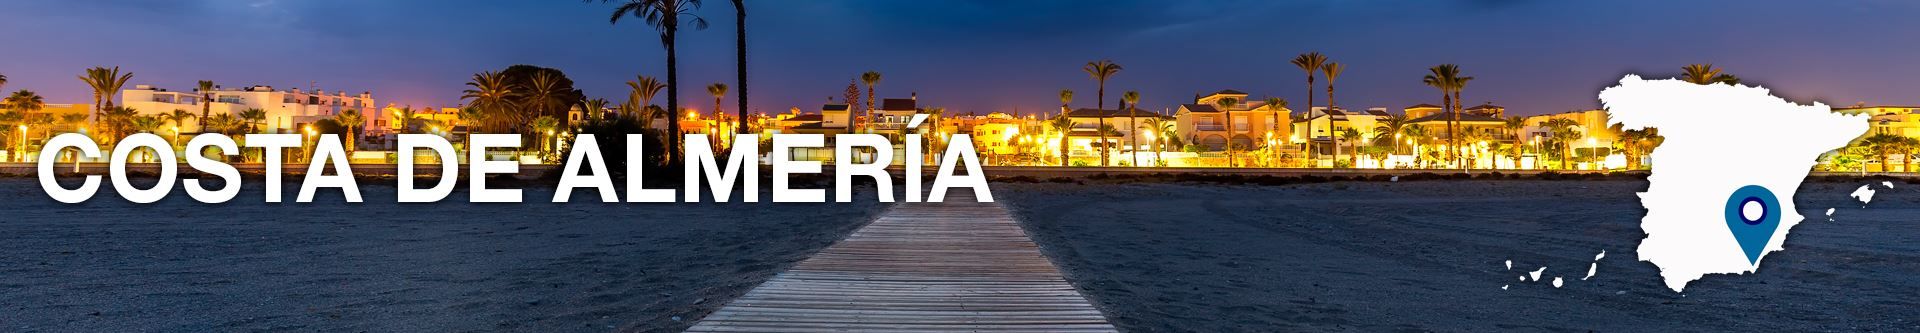 Hoteles en Costa de Almería - No pagues más por lo mismo